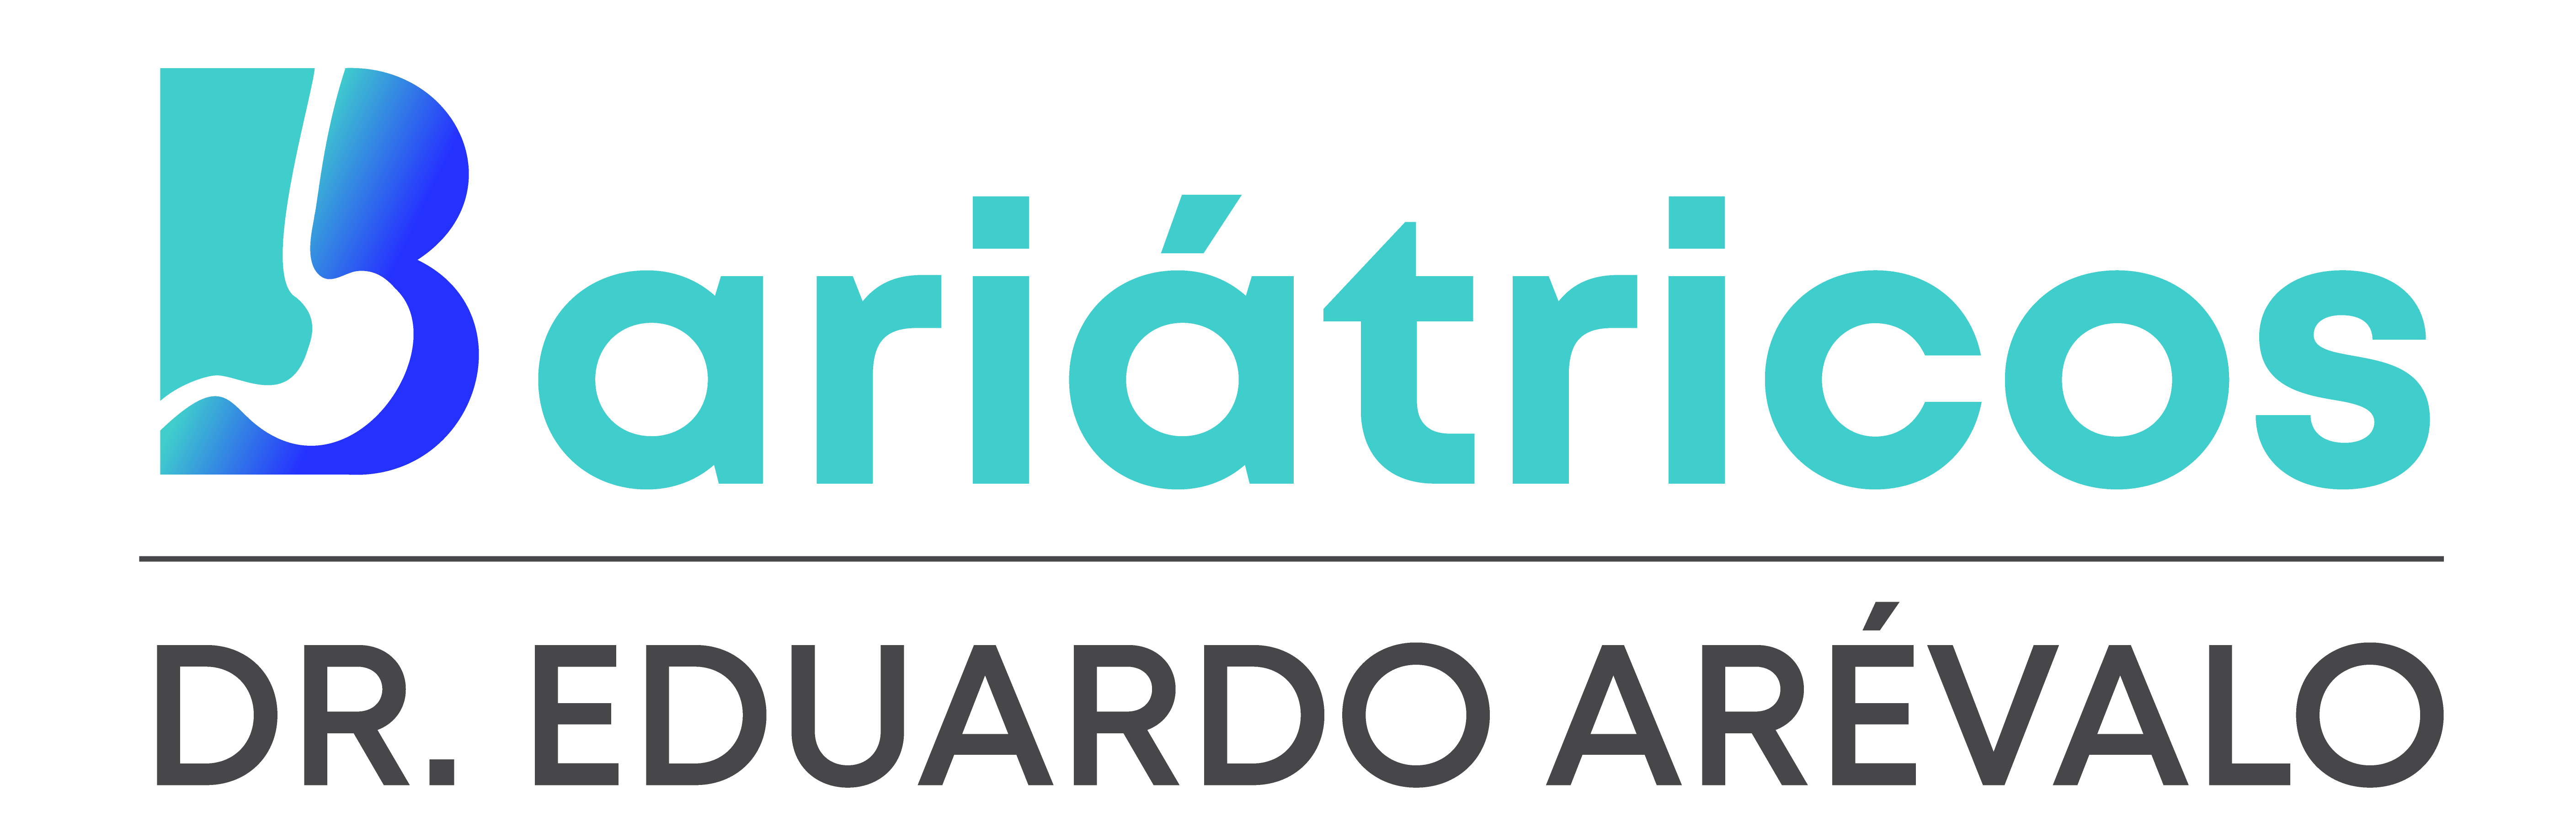 Dr, Arevalo Bariatricos Logo